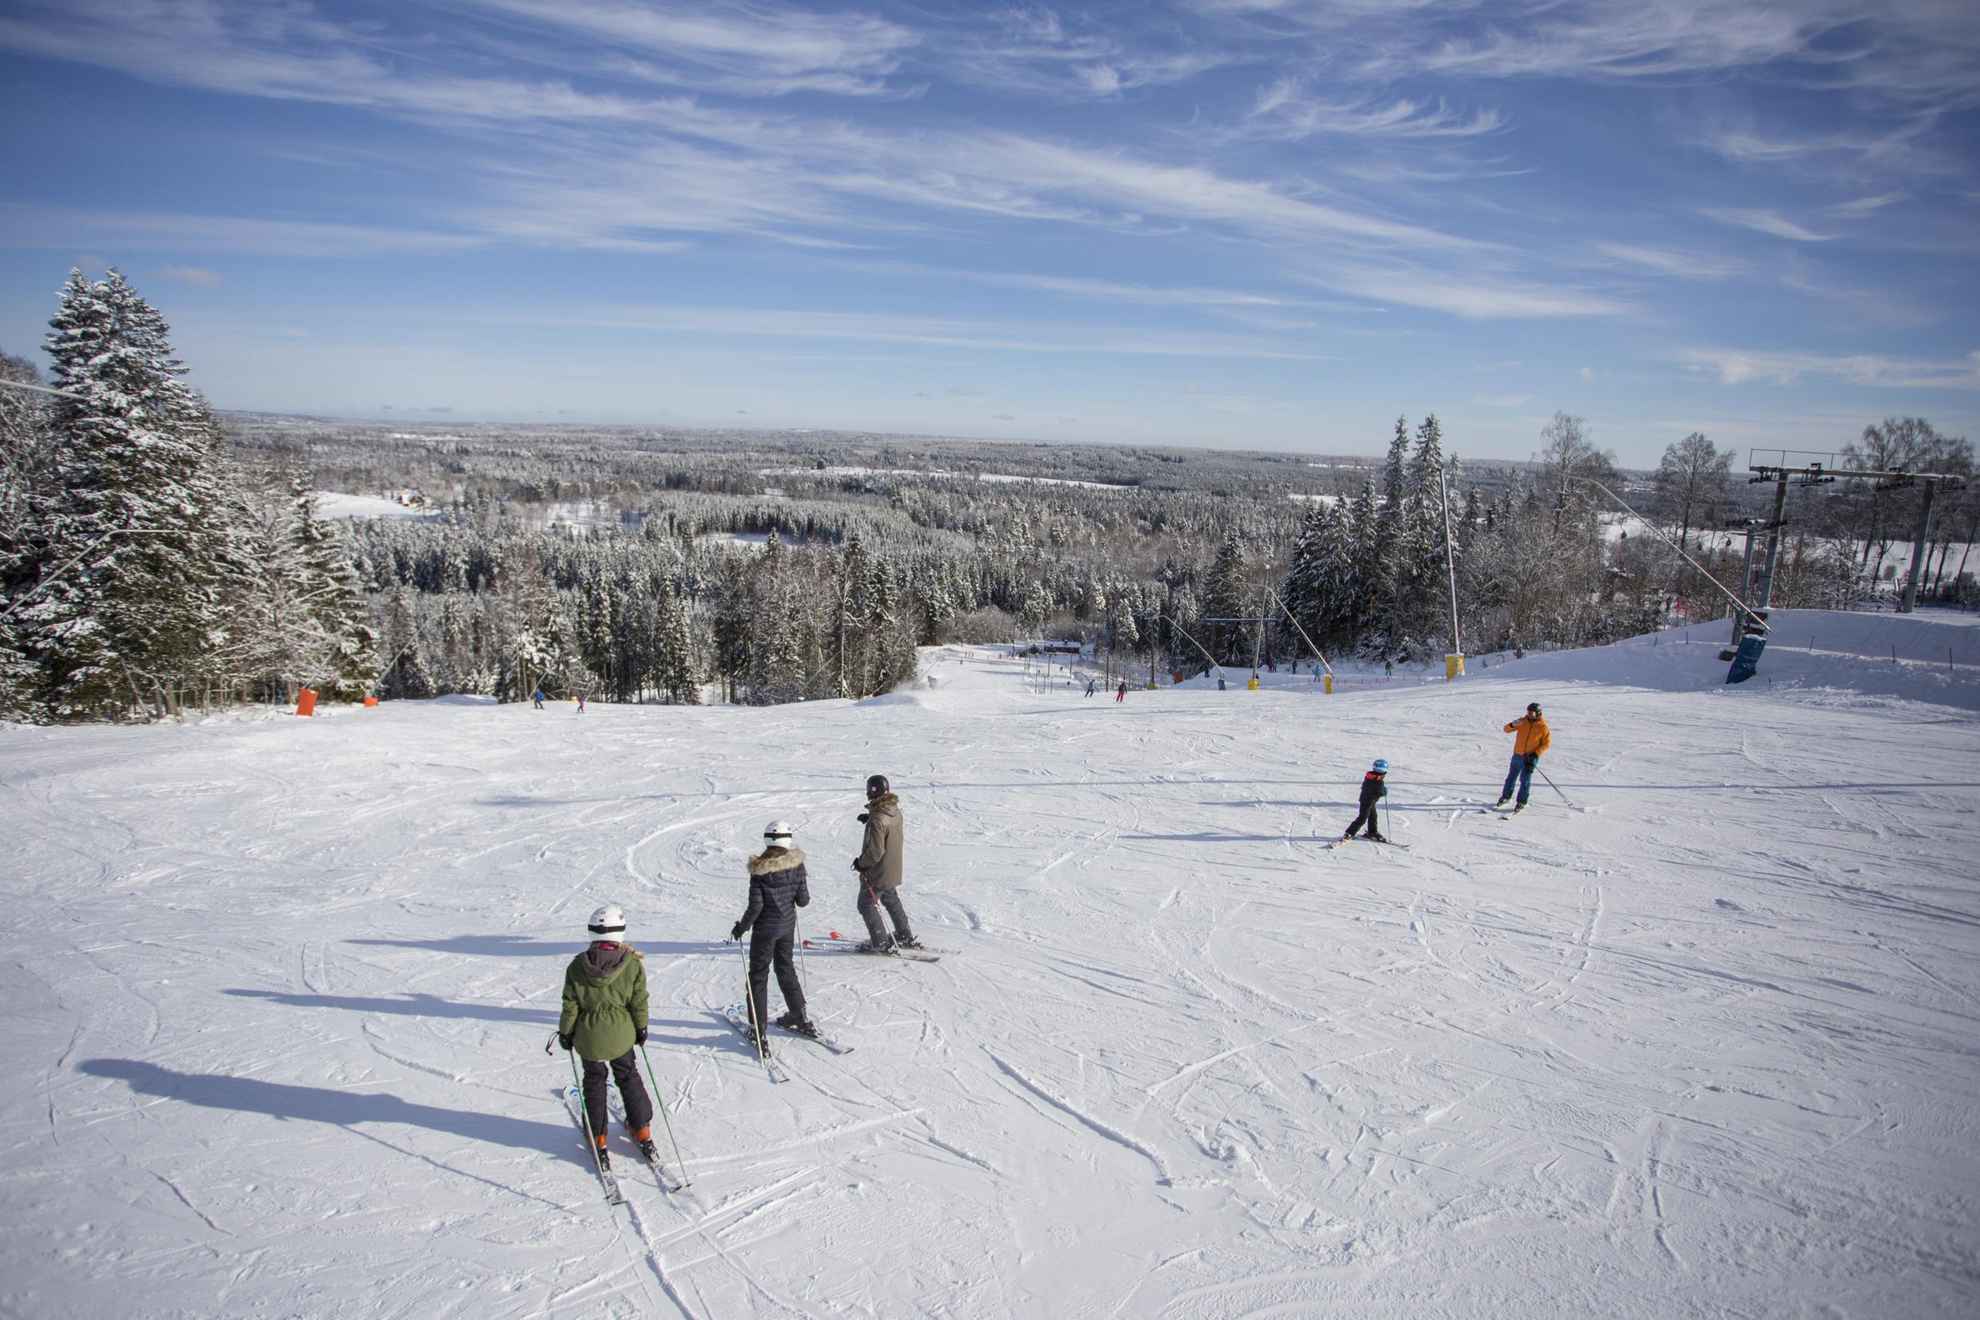 Personnes dévalant une pente en ski avec une vue sur un paysage enneigé.